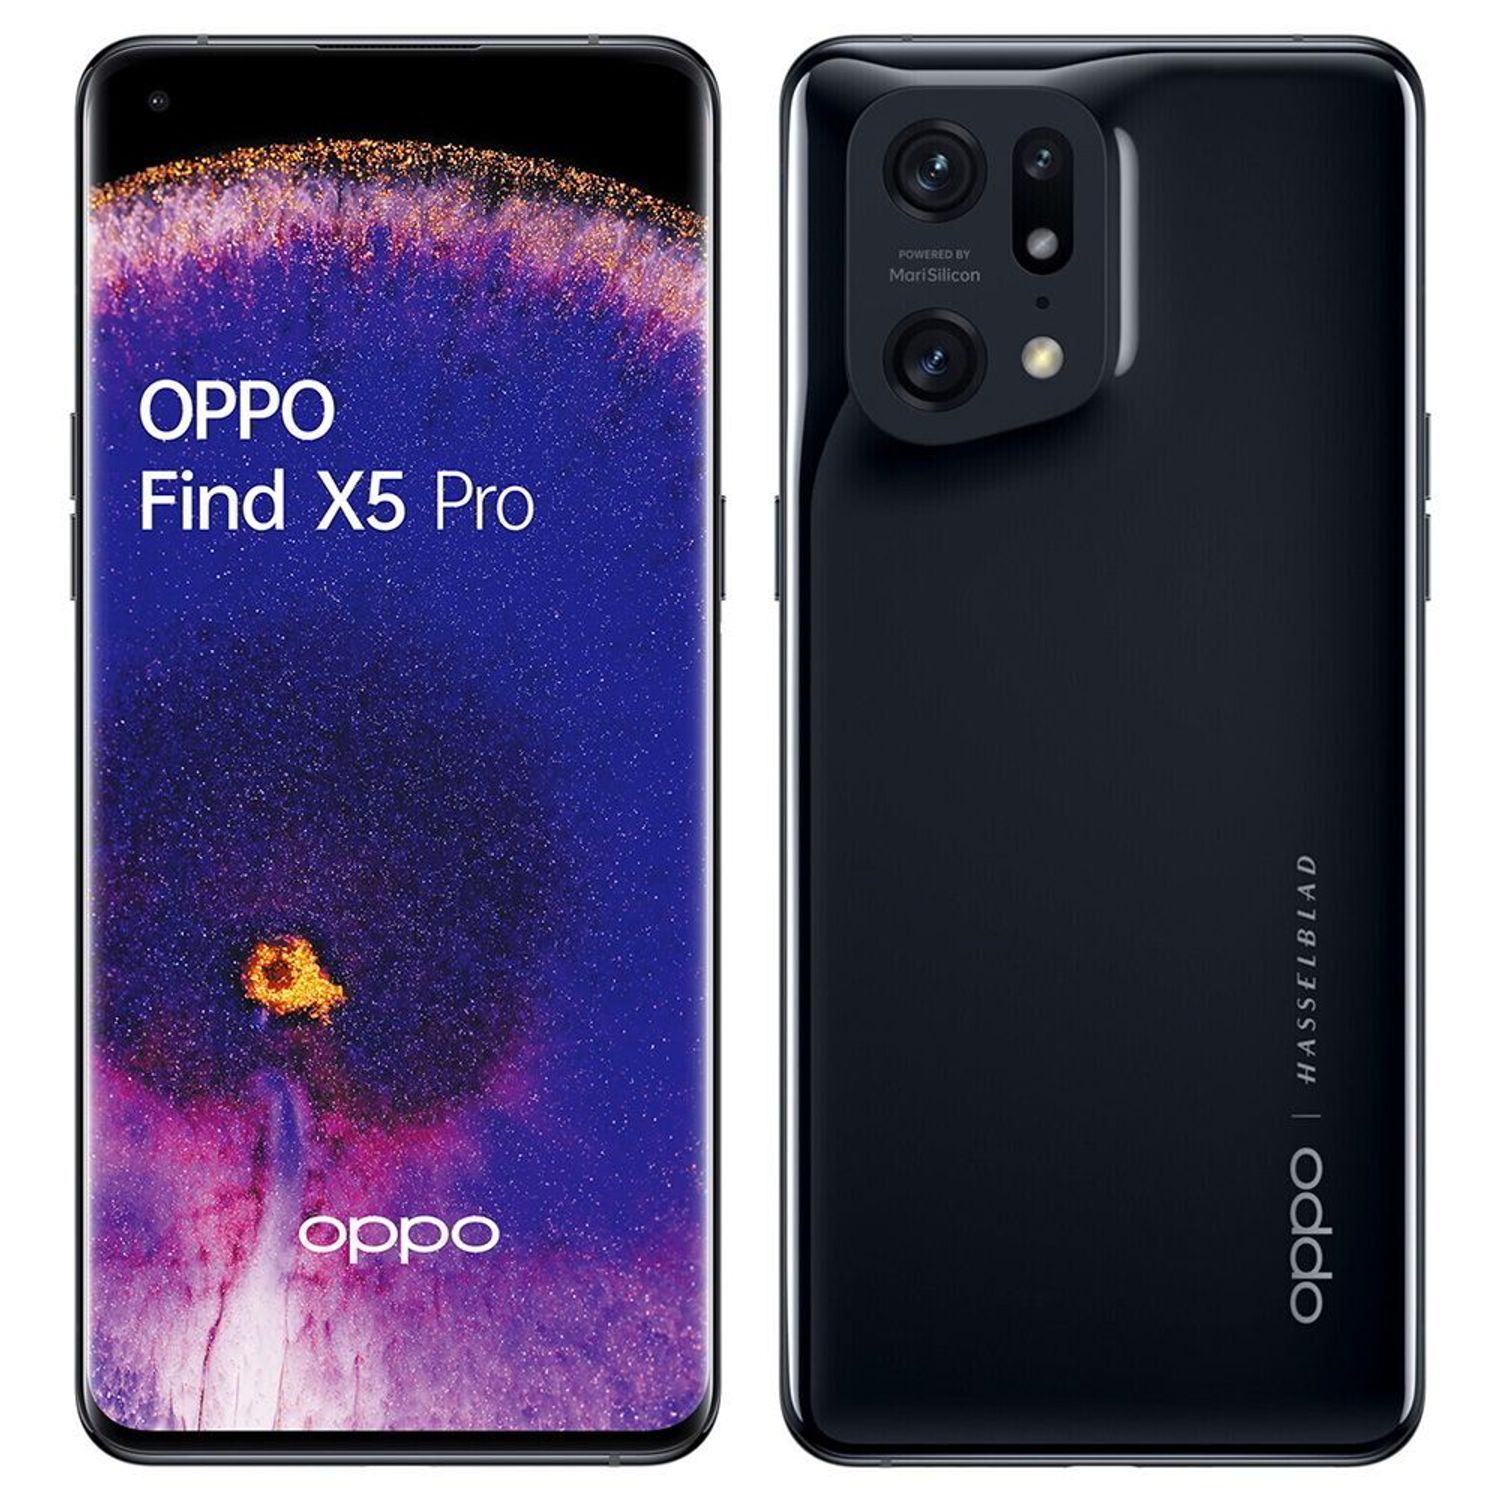 OPPO Find X5 y Find X5 Pro - características, detalles y precios